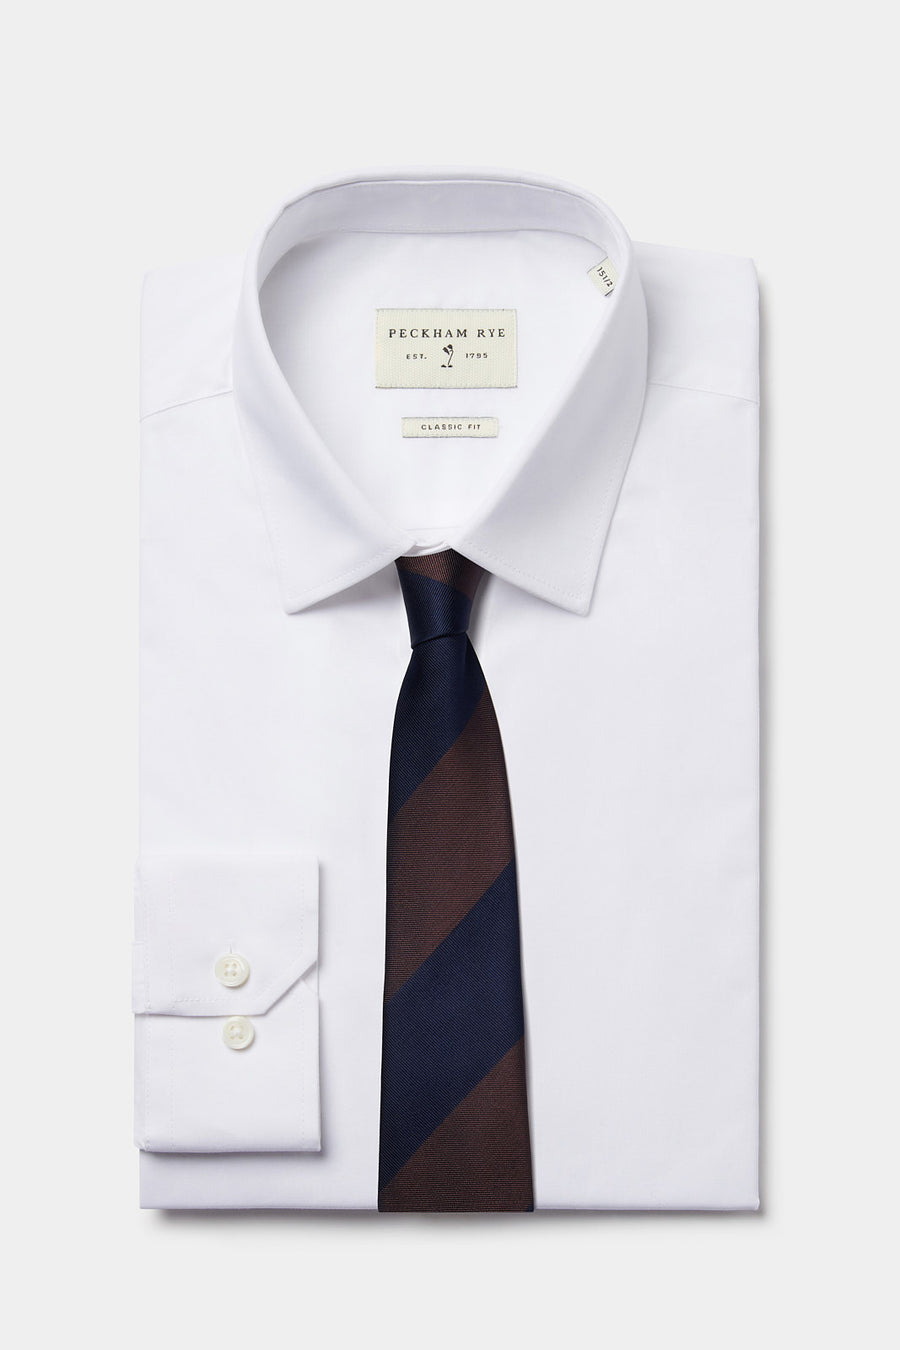 Silk Striped Tie in Navy Blue